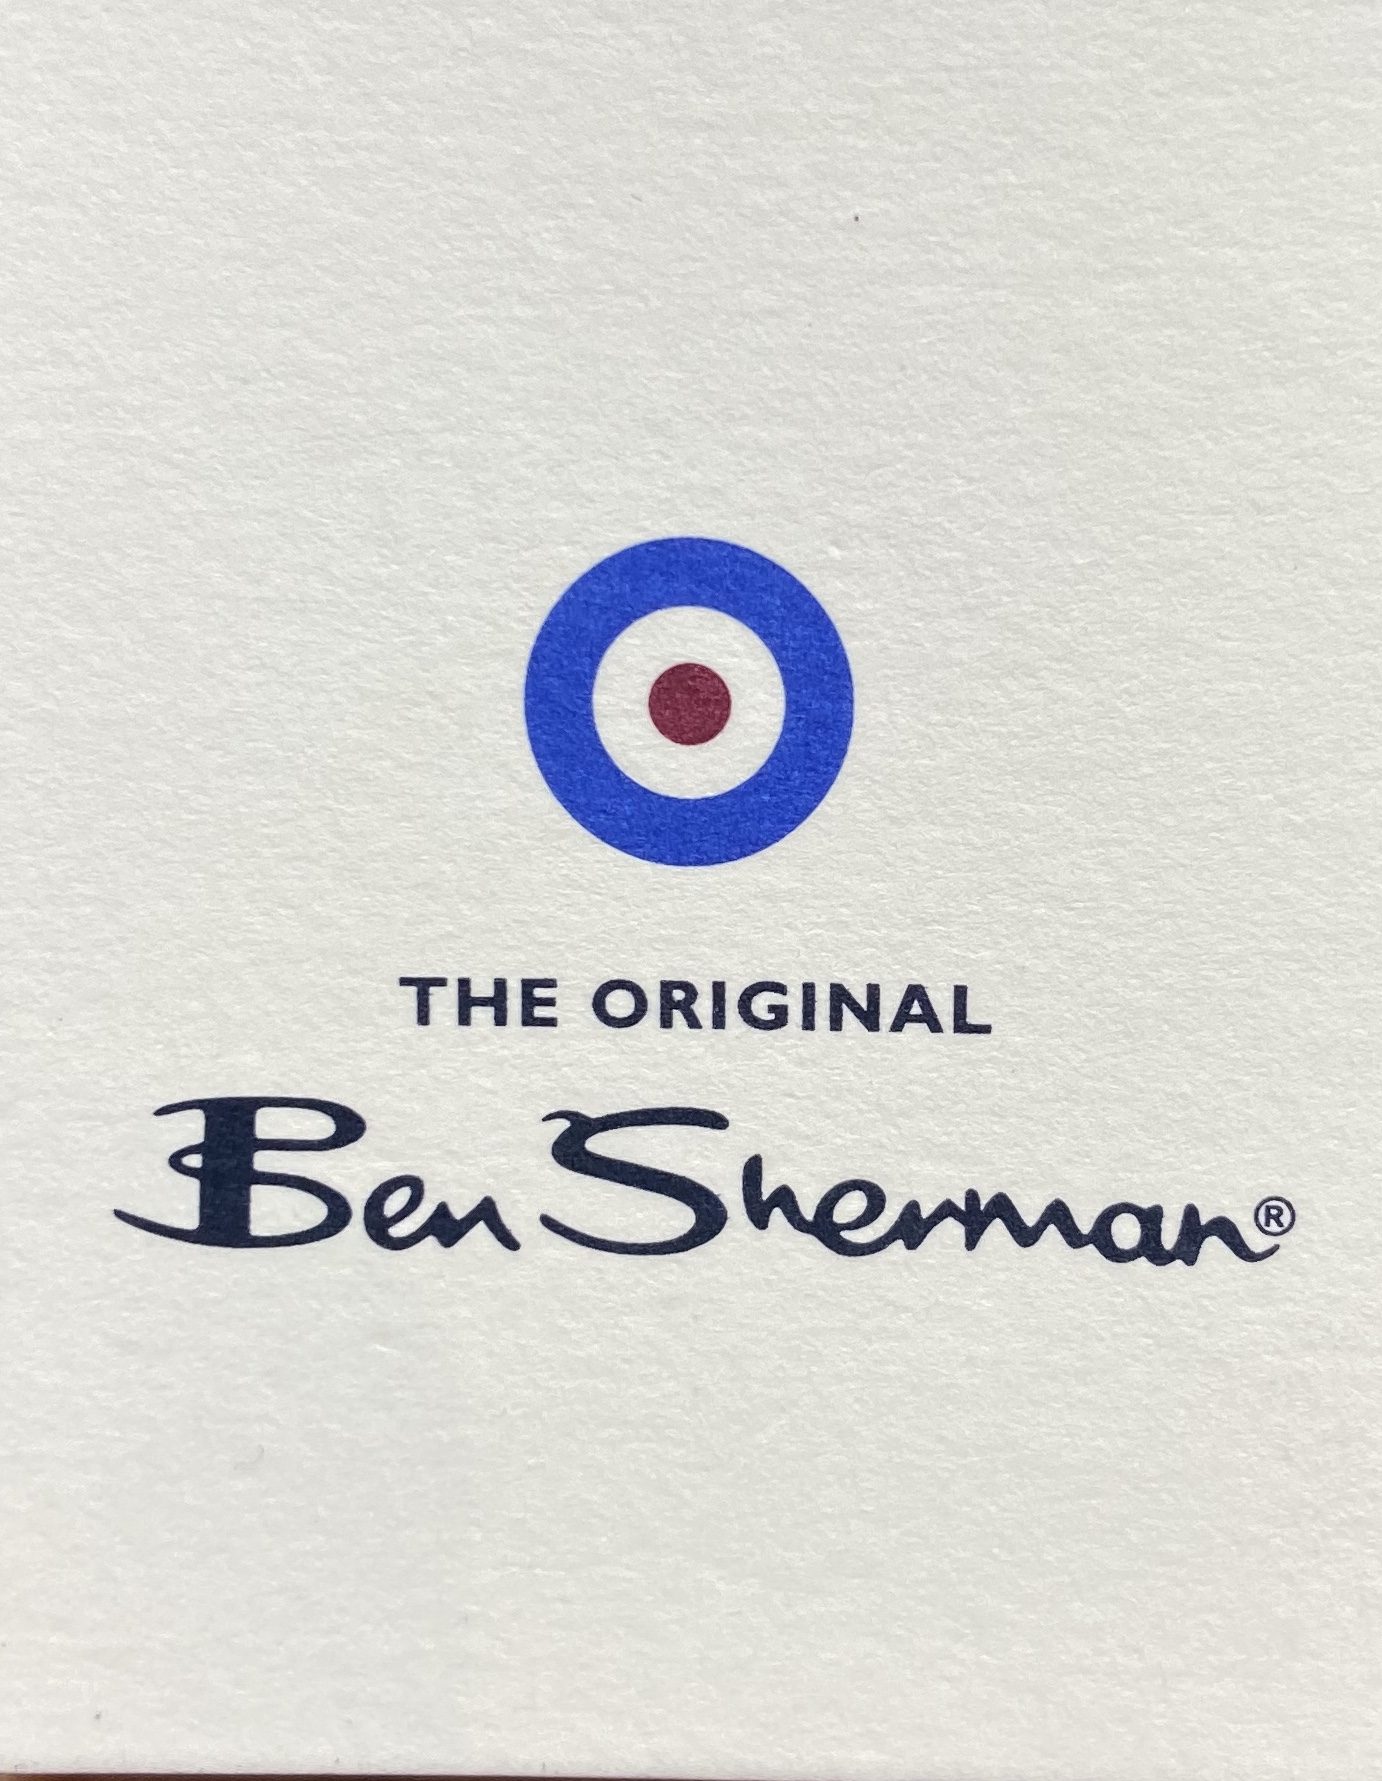 BEN SHERMAN